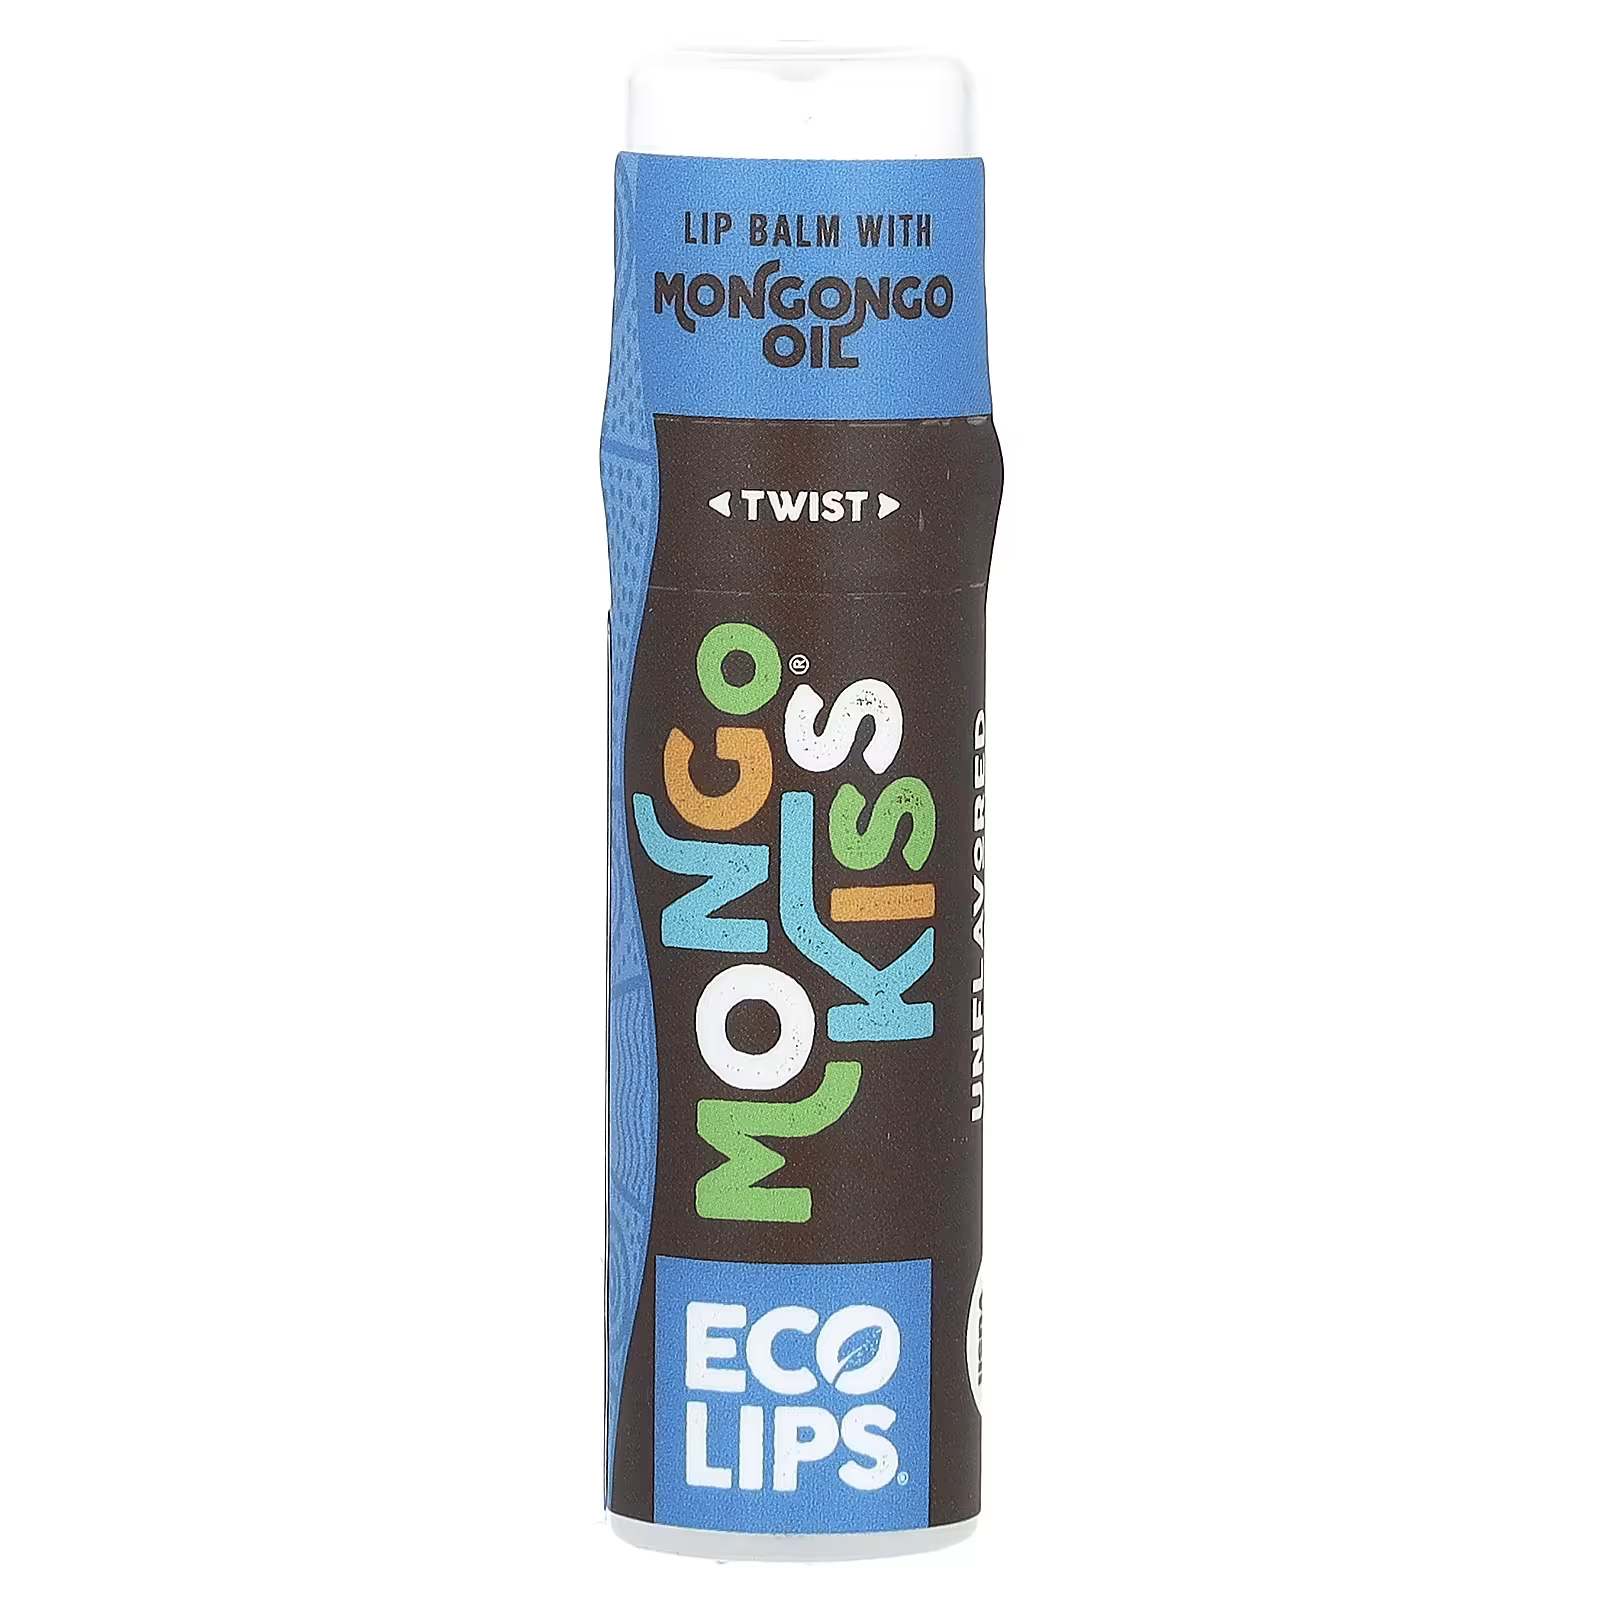 Бальзам для губ Eco Lips Inc. Mongo Kiss, 7 г palmer s бальзам для губ формула масла какао spf15 ухаживающий бальзам для губ шоколад 4 г